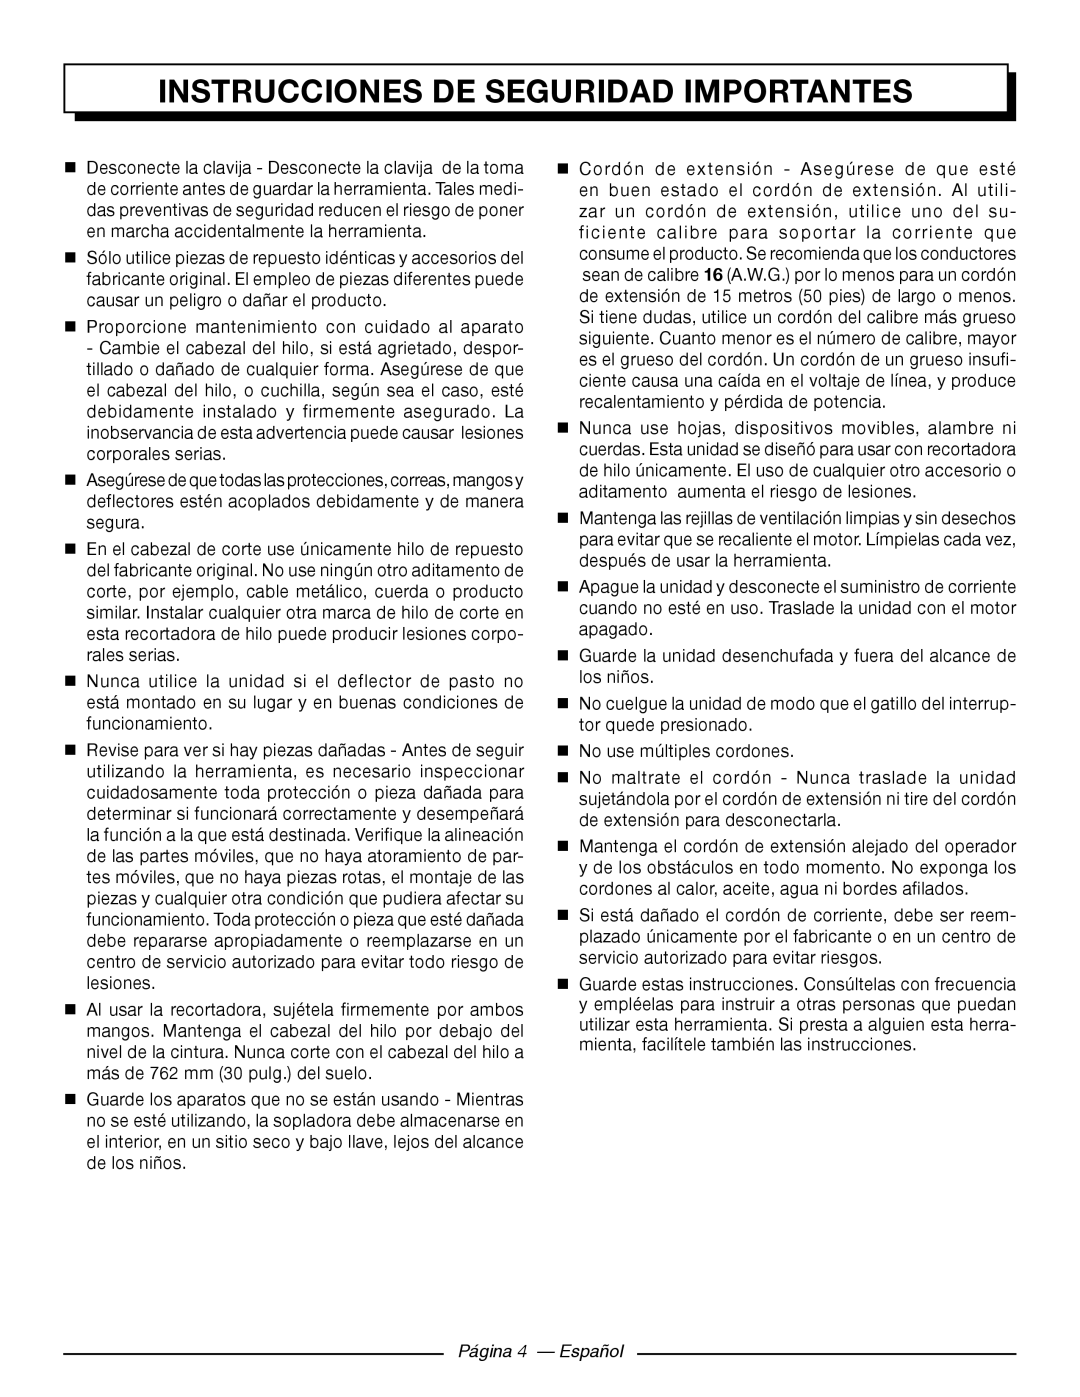 Homelite UT41121 manuel dutilisation Página 4 - Español, Instrucciones De Seguridad Importantes 